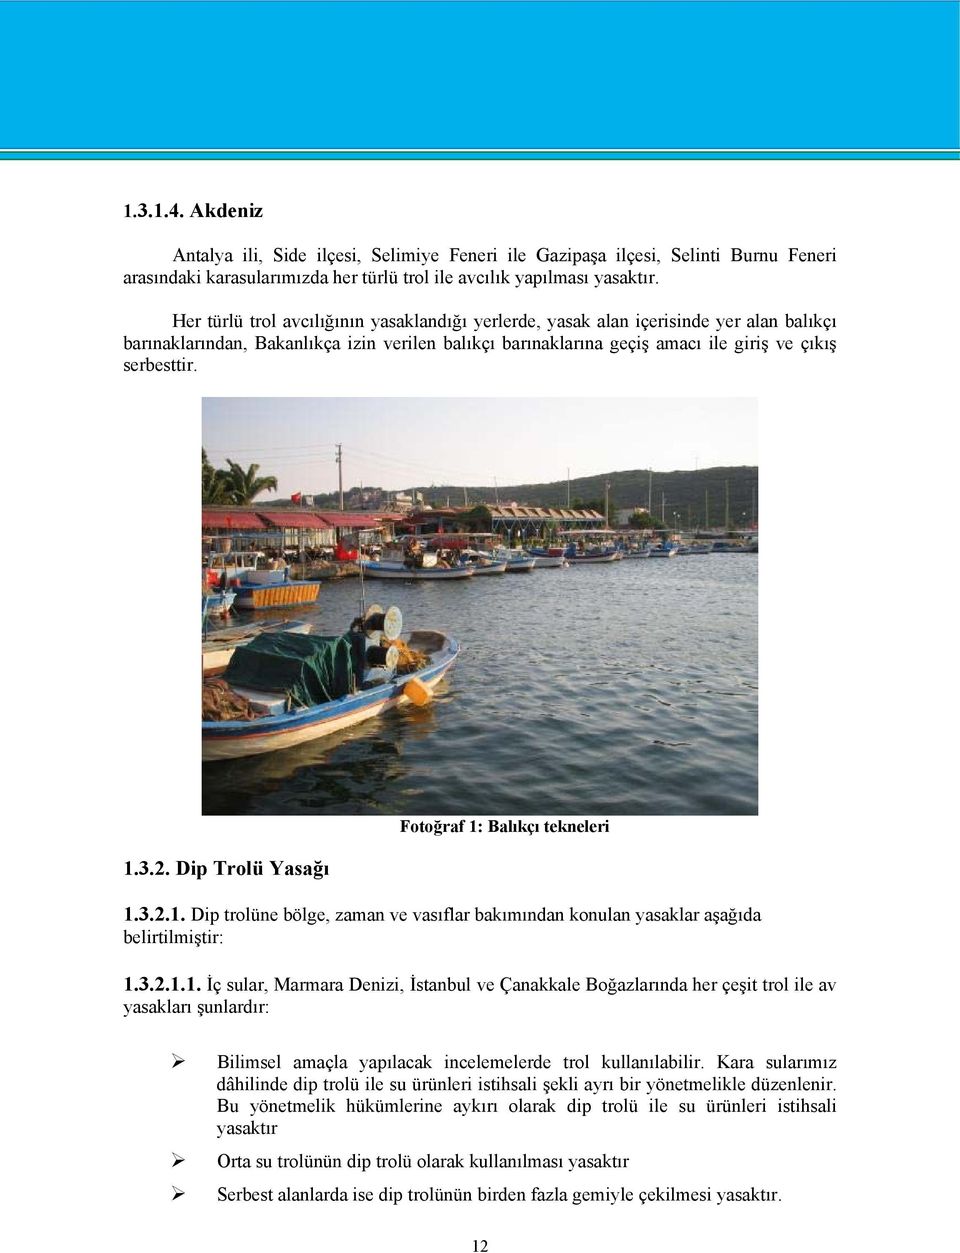 2. Dip Trolü Yasağı Fotoğraf 1: Balıkçı tekneleri 1.3.2.1. Dip trolüne bölge, zaman ve vasıflar bakımından konulan yasaklar aşağıda belirtilmiştir: 1.3.2.1.1. İç sular, Marmara Denizi, İstanbul ve Çanakkale Boğazlarında her çeşit trol ile av yasakları şunlardır: Bilimsel amaçla yapılacak incelemelerde trol kullanılabilir.